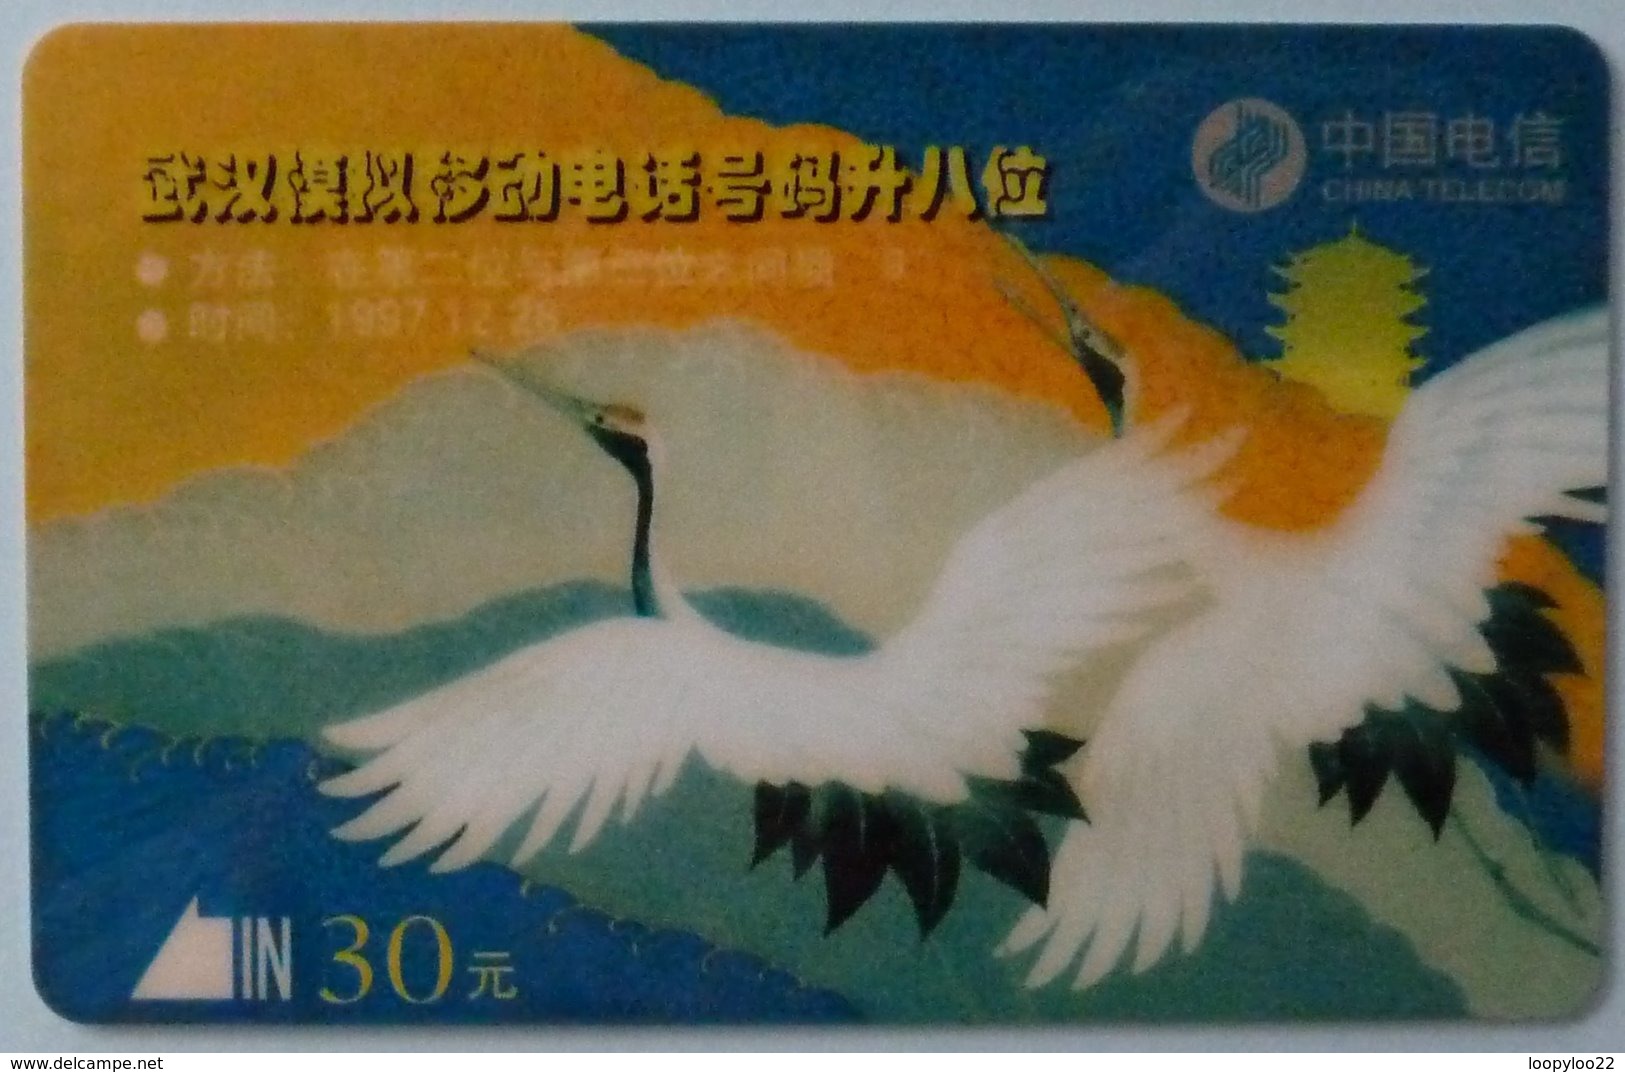 CHINA - Hubei - Teccom - Magnetic - EPT3 - 1997 - Set Of 1 - Used - China